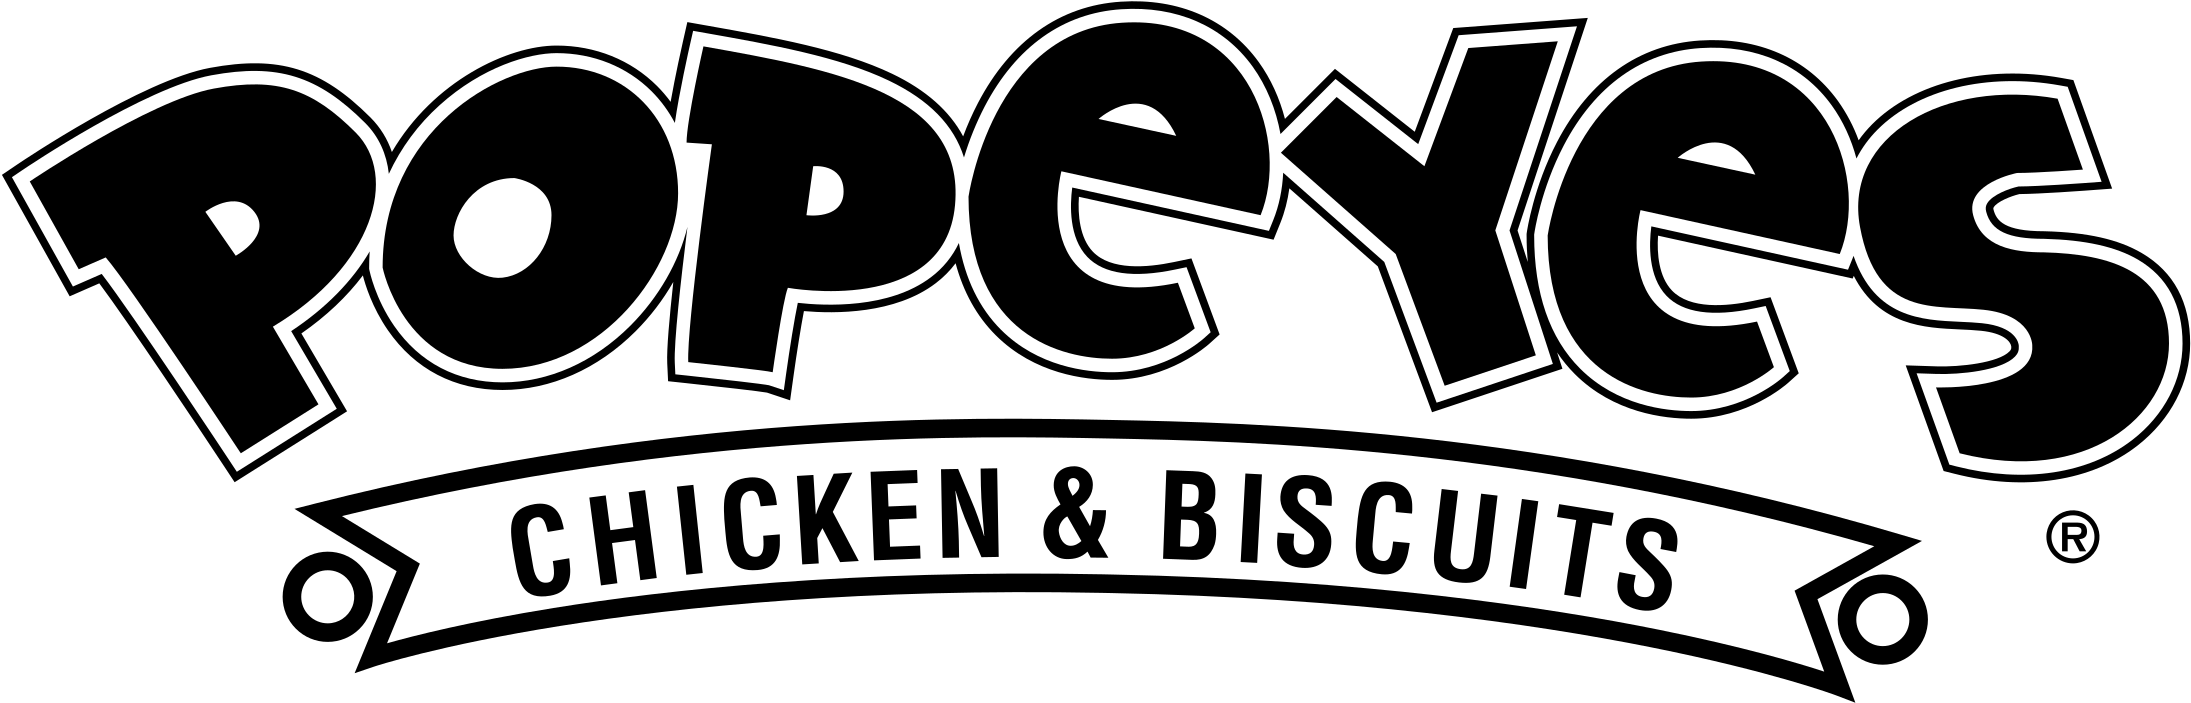 Popeyes Restaurant Logo PNG